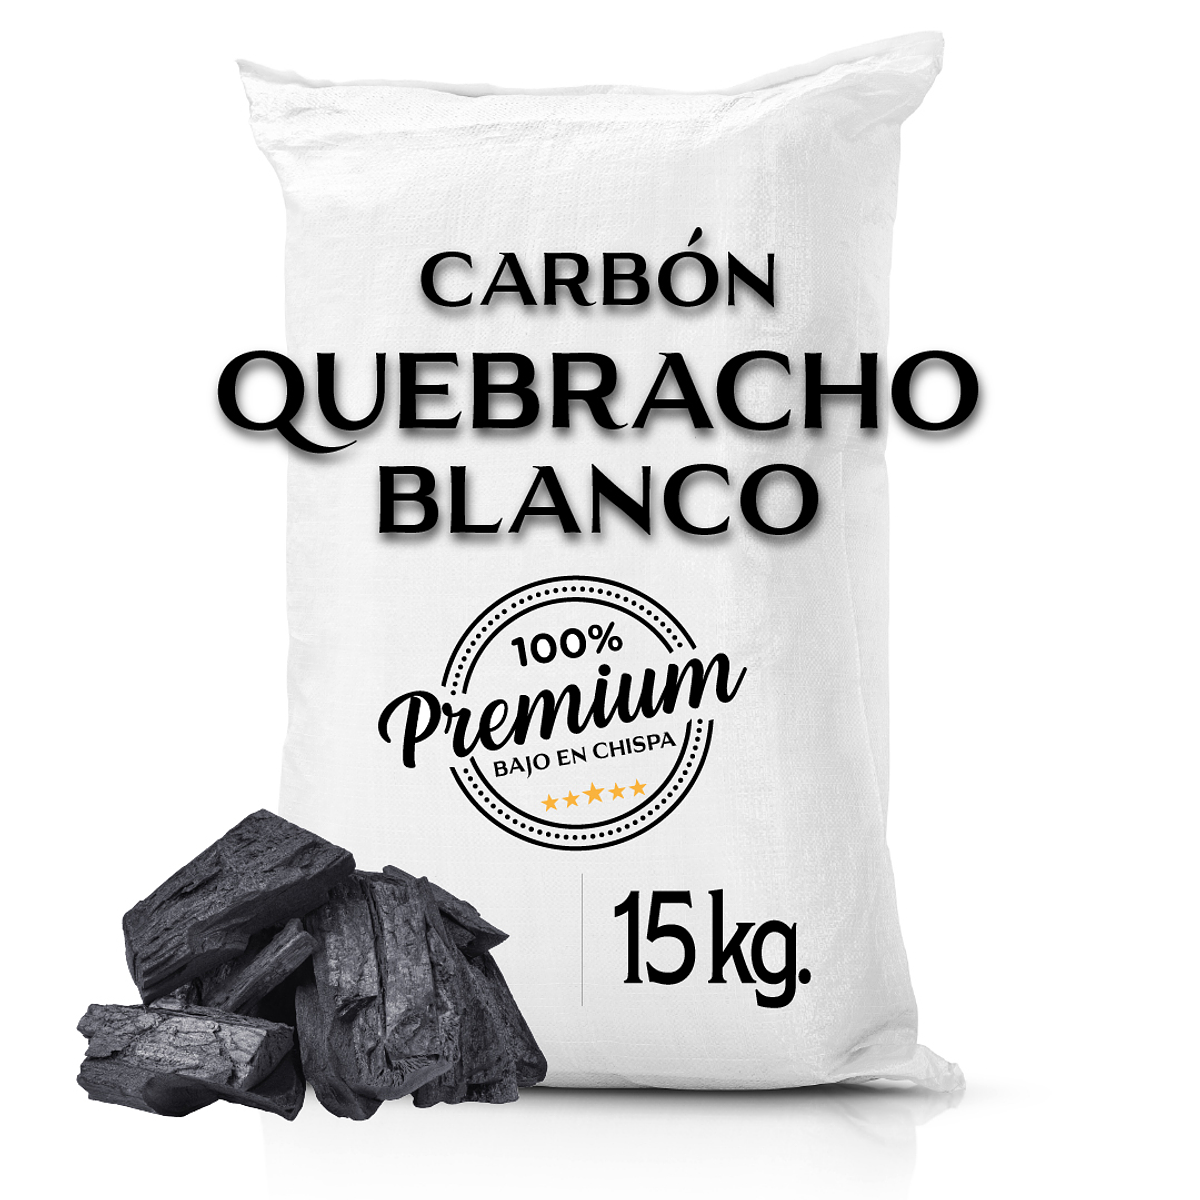 Carbón Quebracho Blanco Premium 15 Kg. Aprox. | ELPARRILLERO.CL Premium  Store